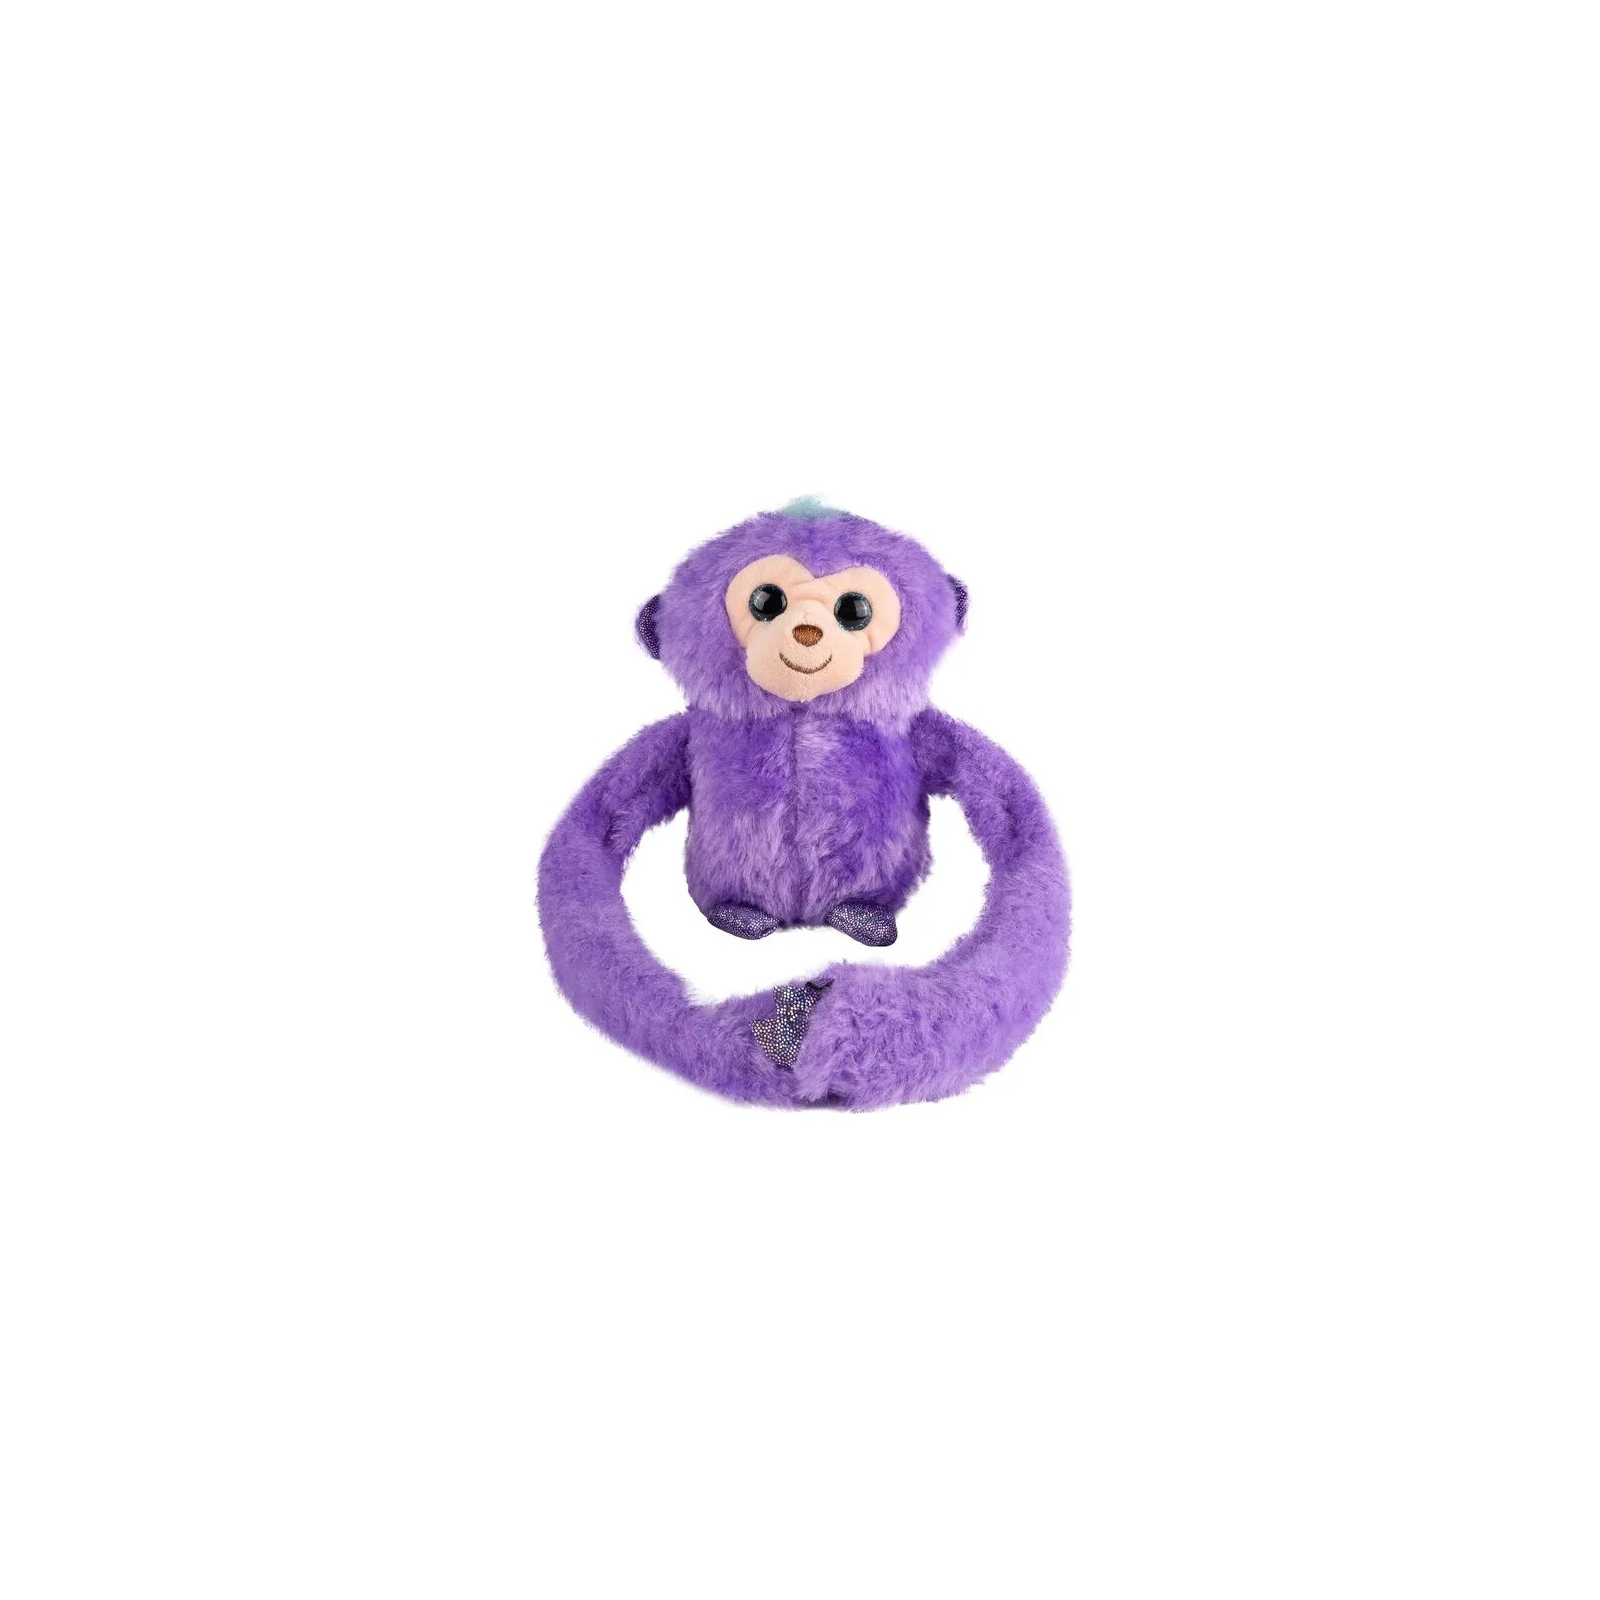 Интерактивная игрушка Bambi Обезьяна Фиолетовая (MP 2304 violet)